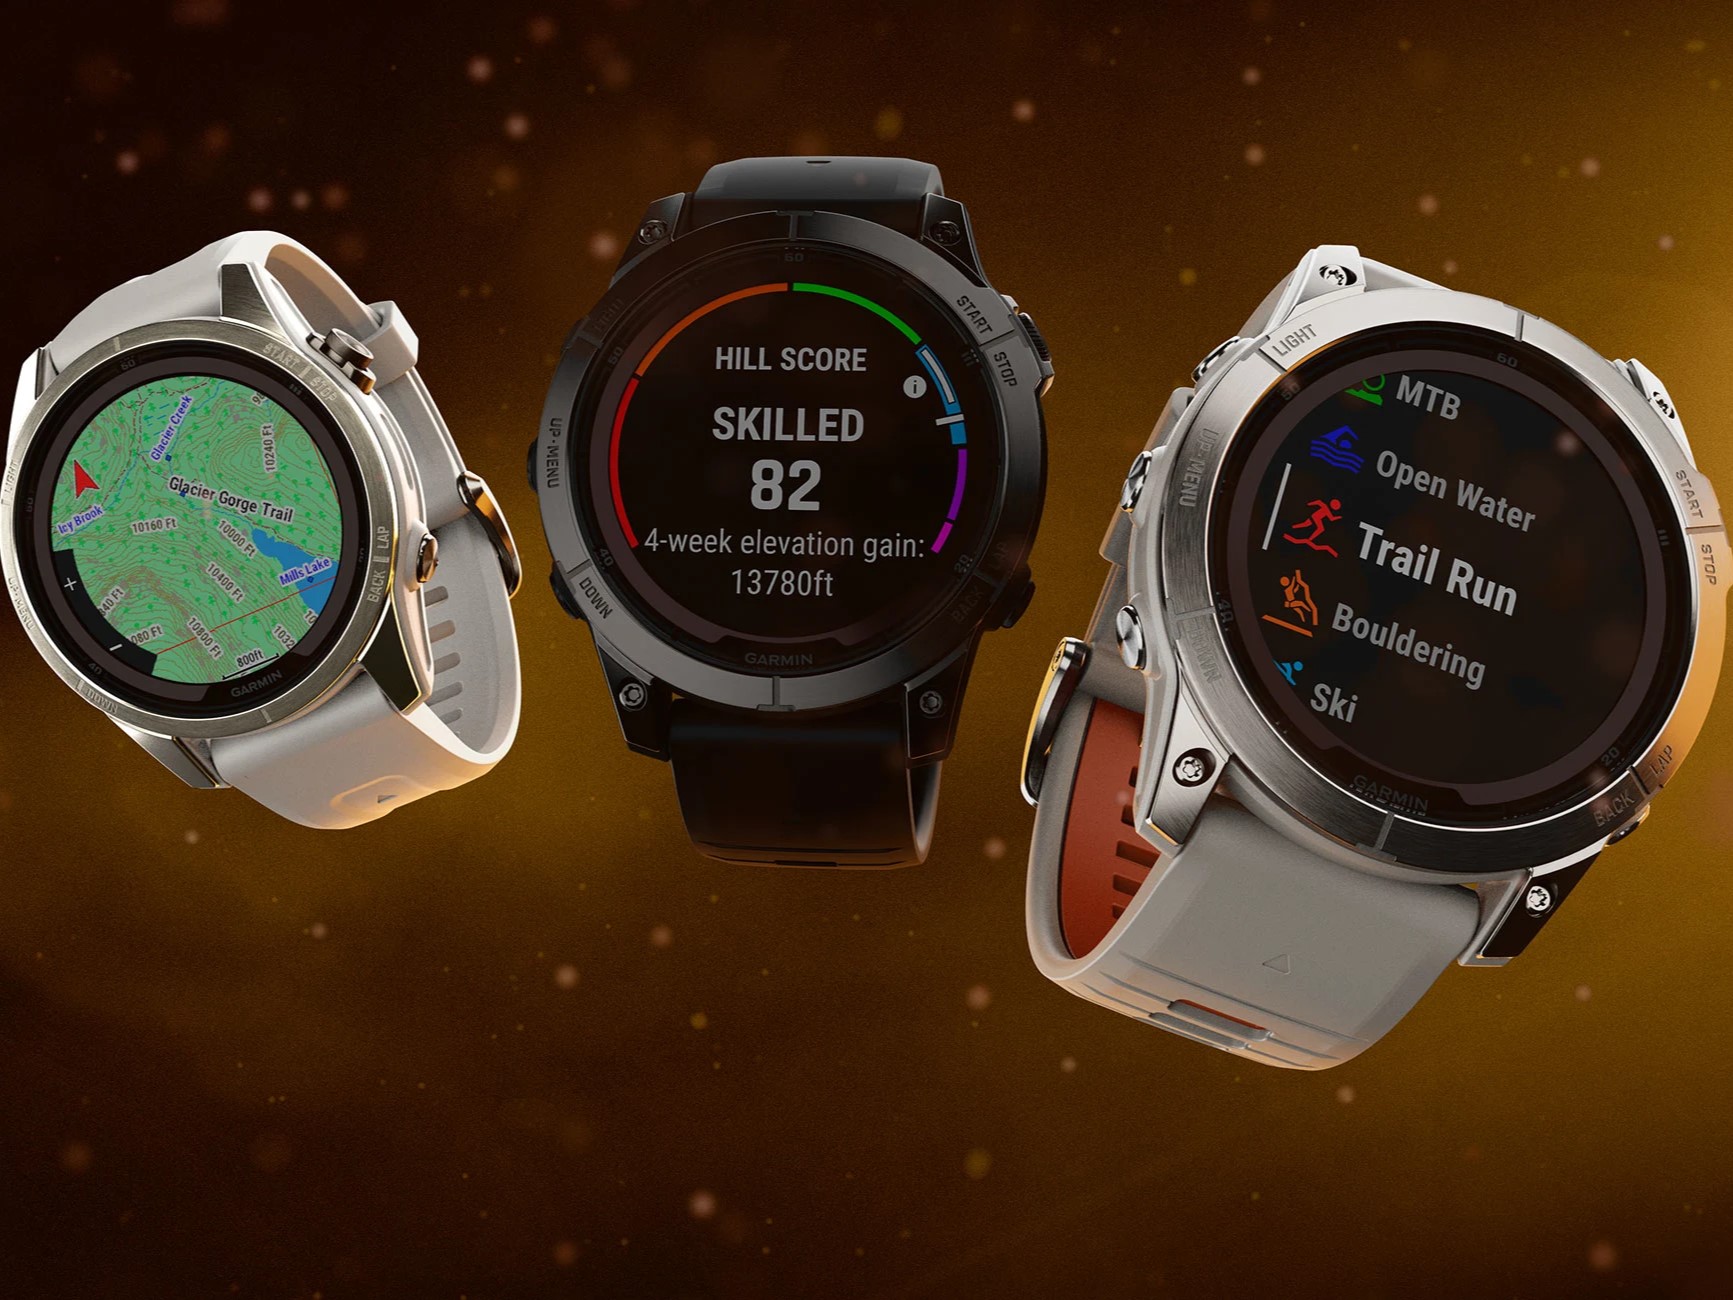 Garmin Announces Epix Pro And Fenix 7 Pro Smartwatches 